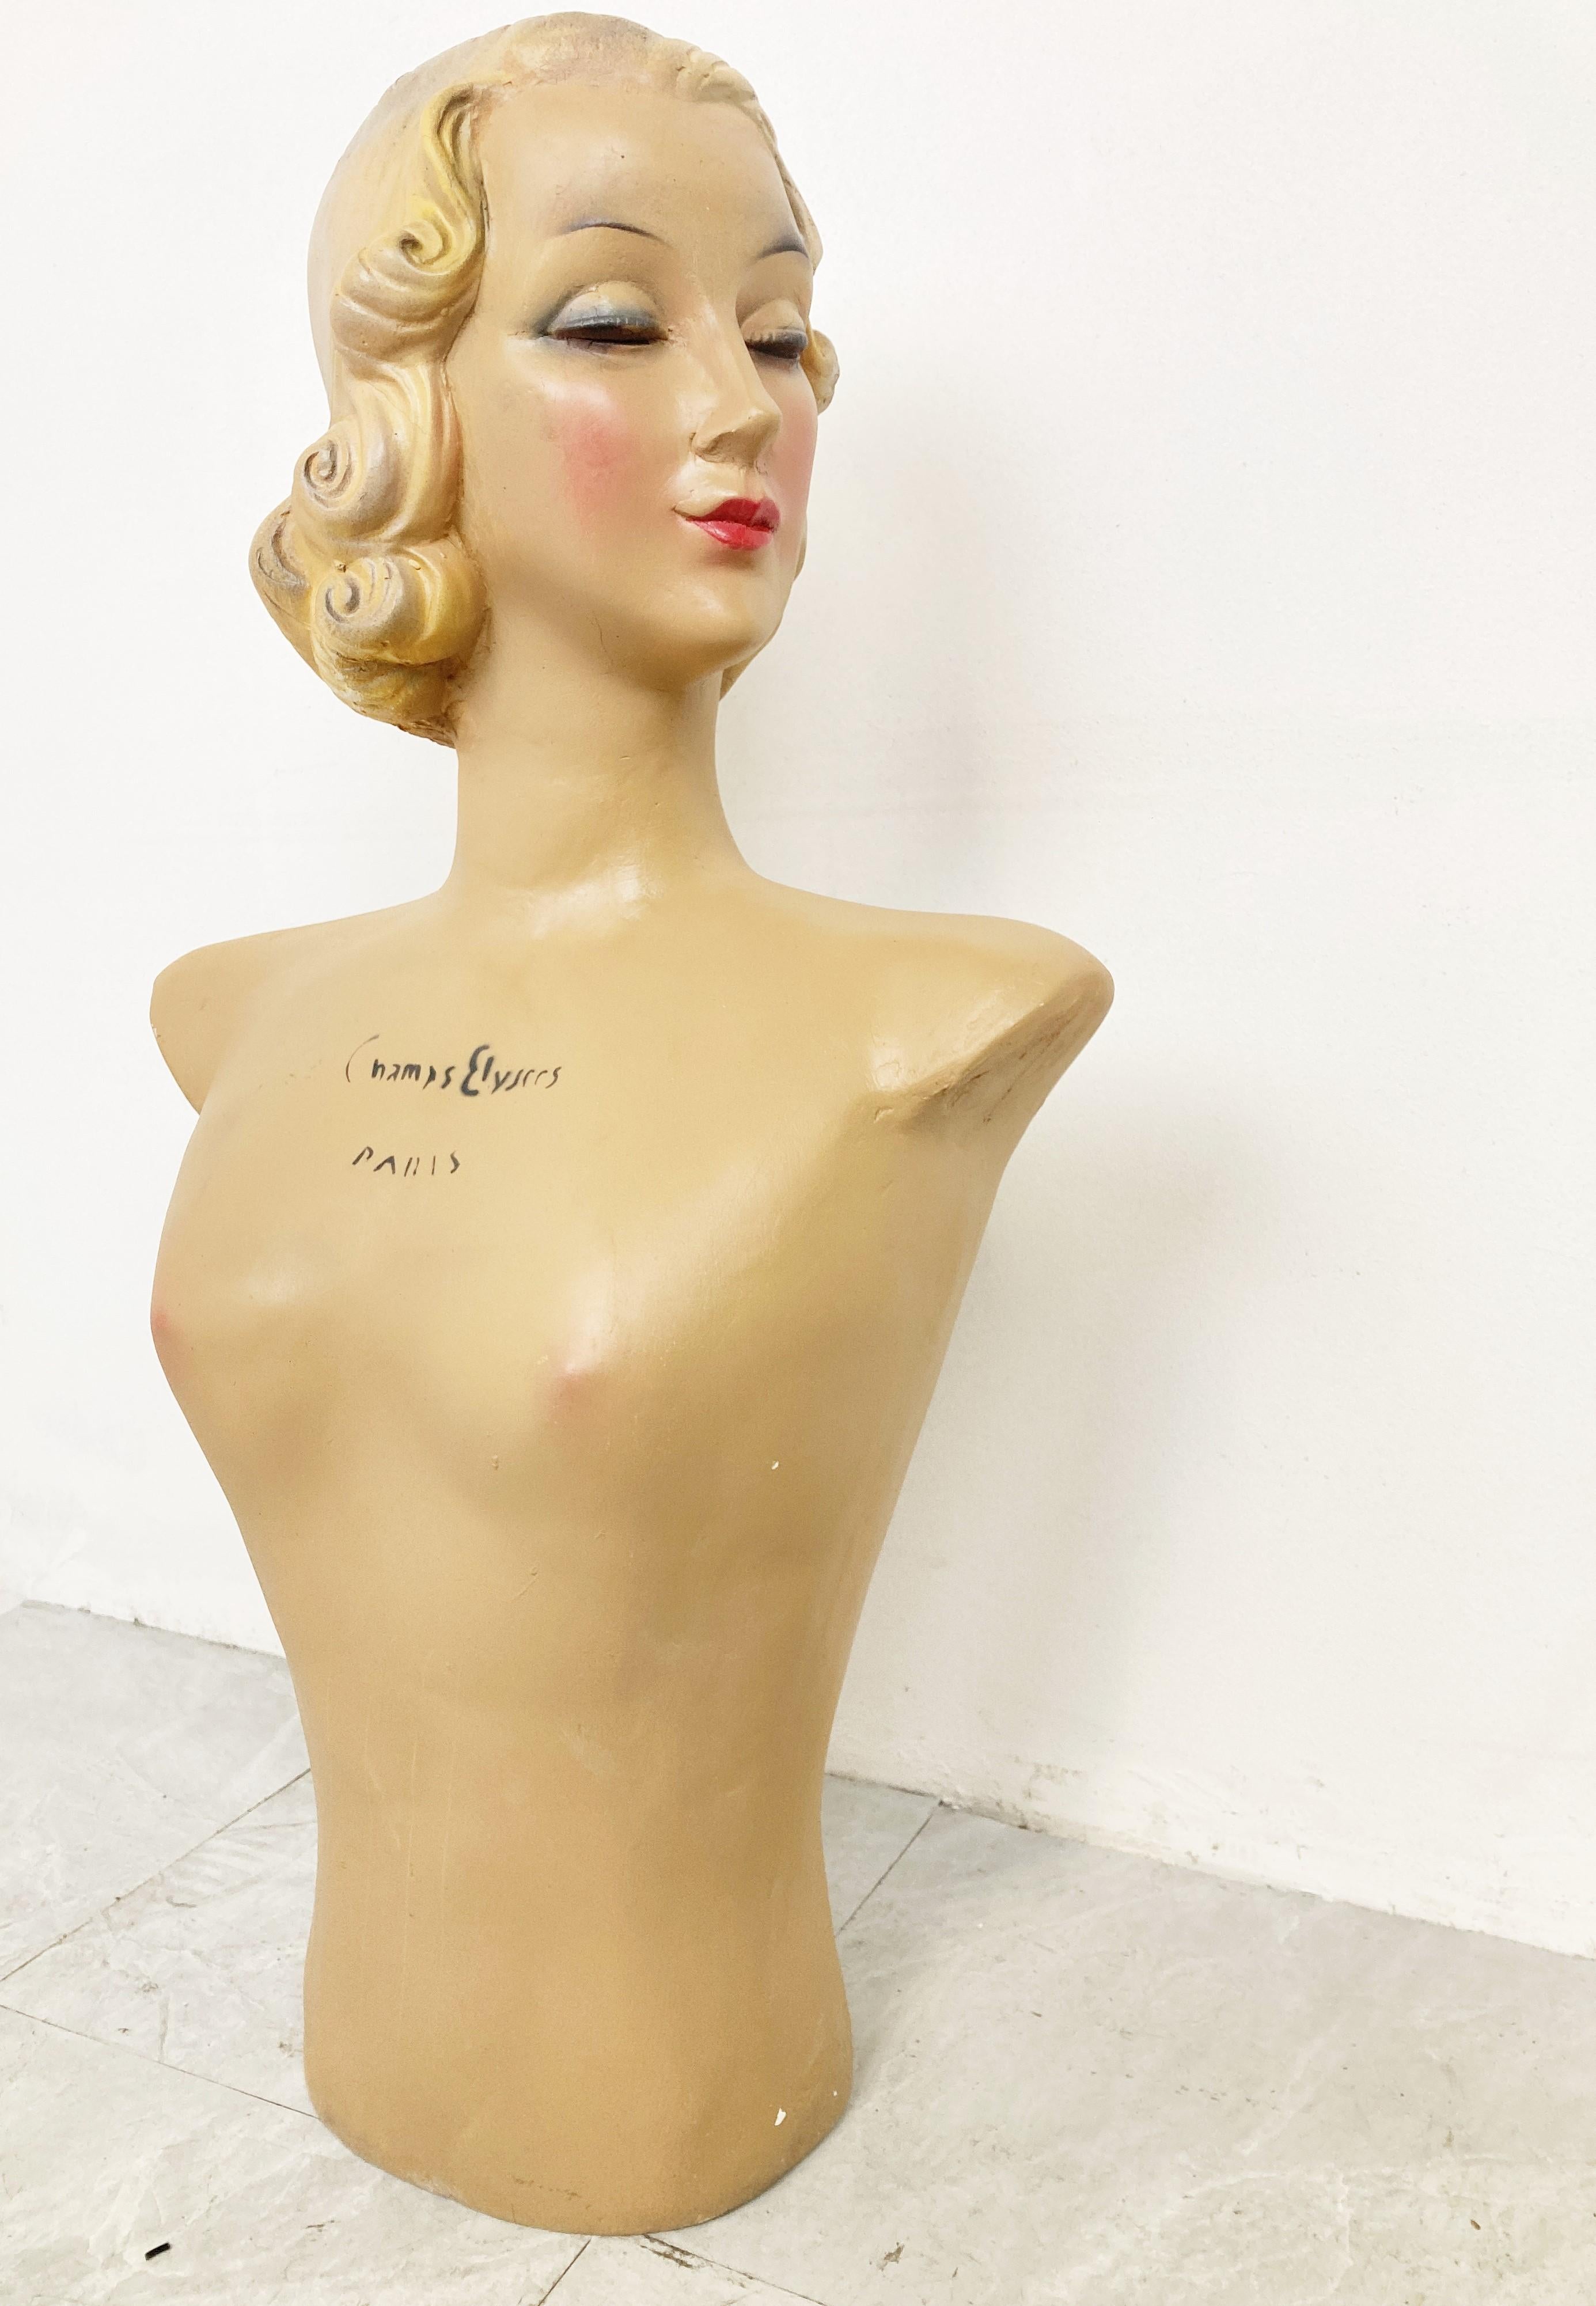 Buste/mannequin en plâtre qui servait de support publicitaire pour les nouvelles collections de lingerie. 

Il est en très bon état pour son âge. 

La coiffure de la dame est également de style 